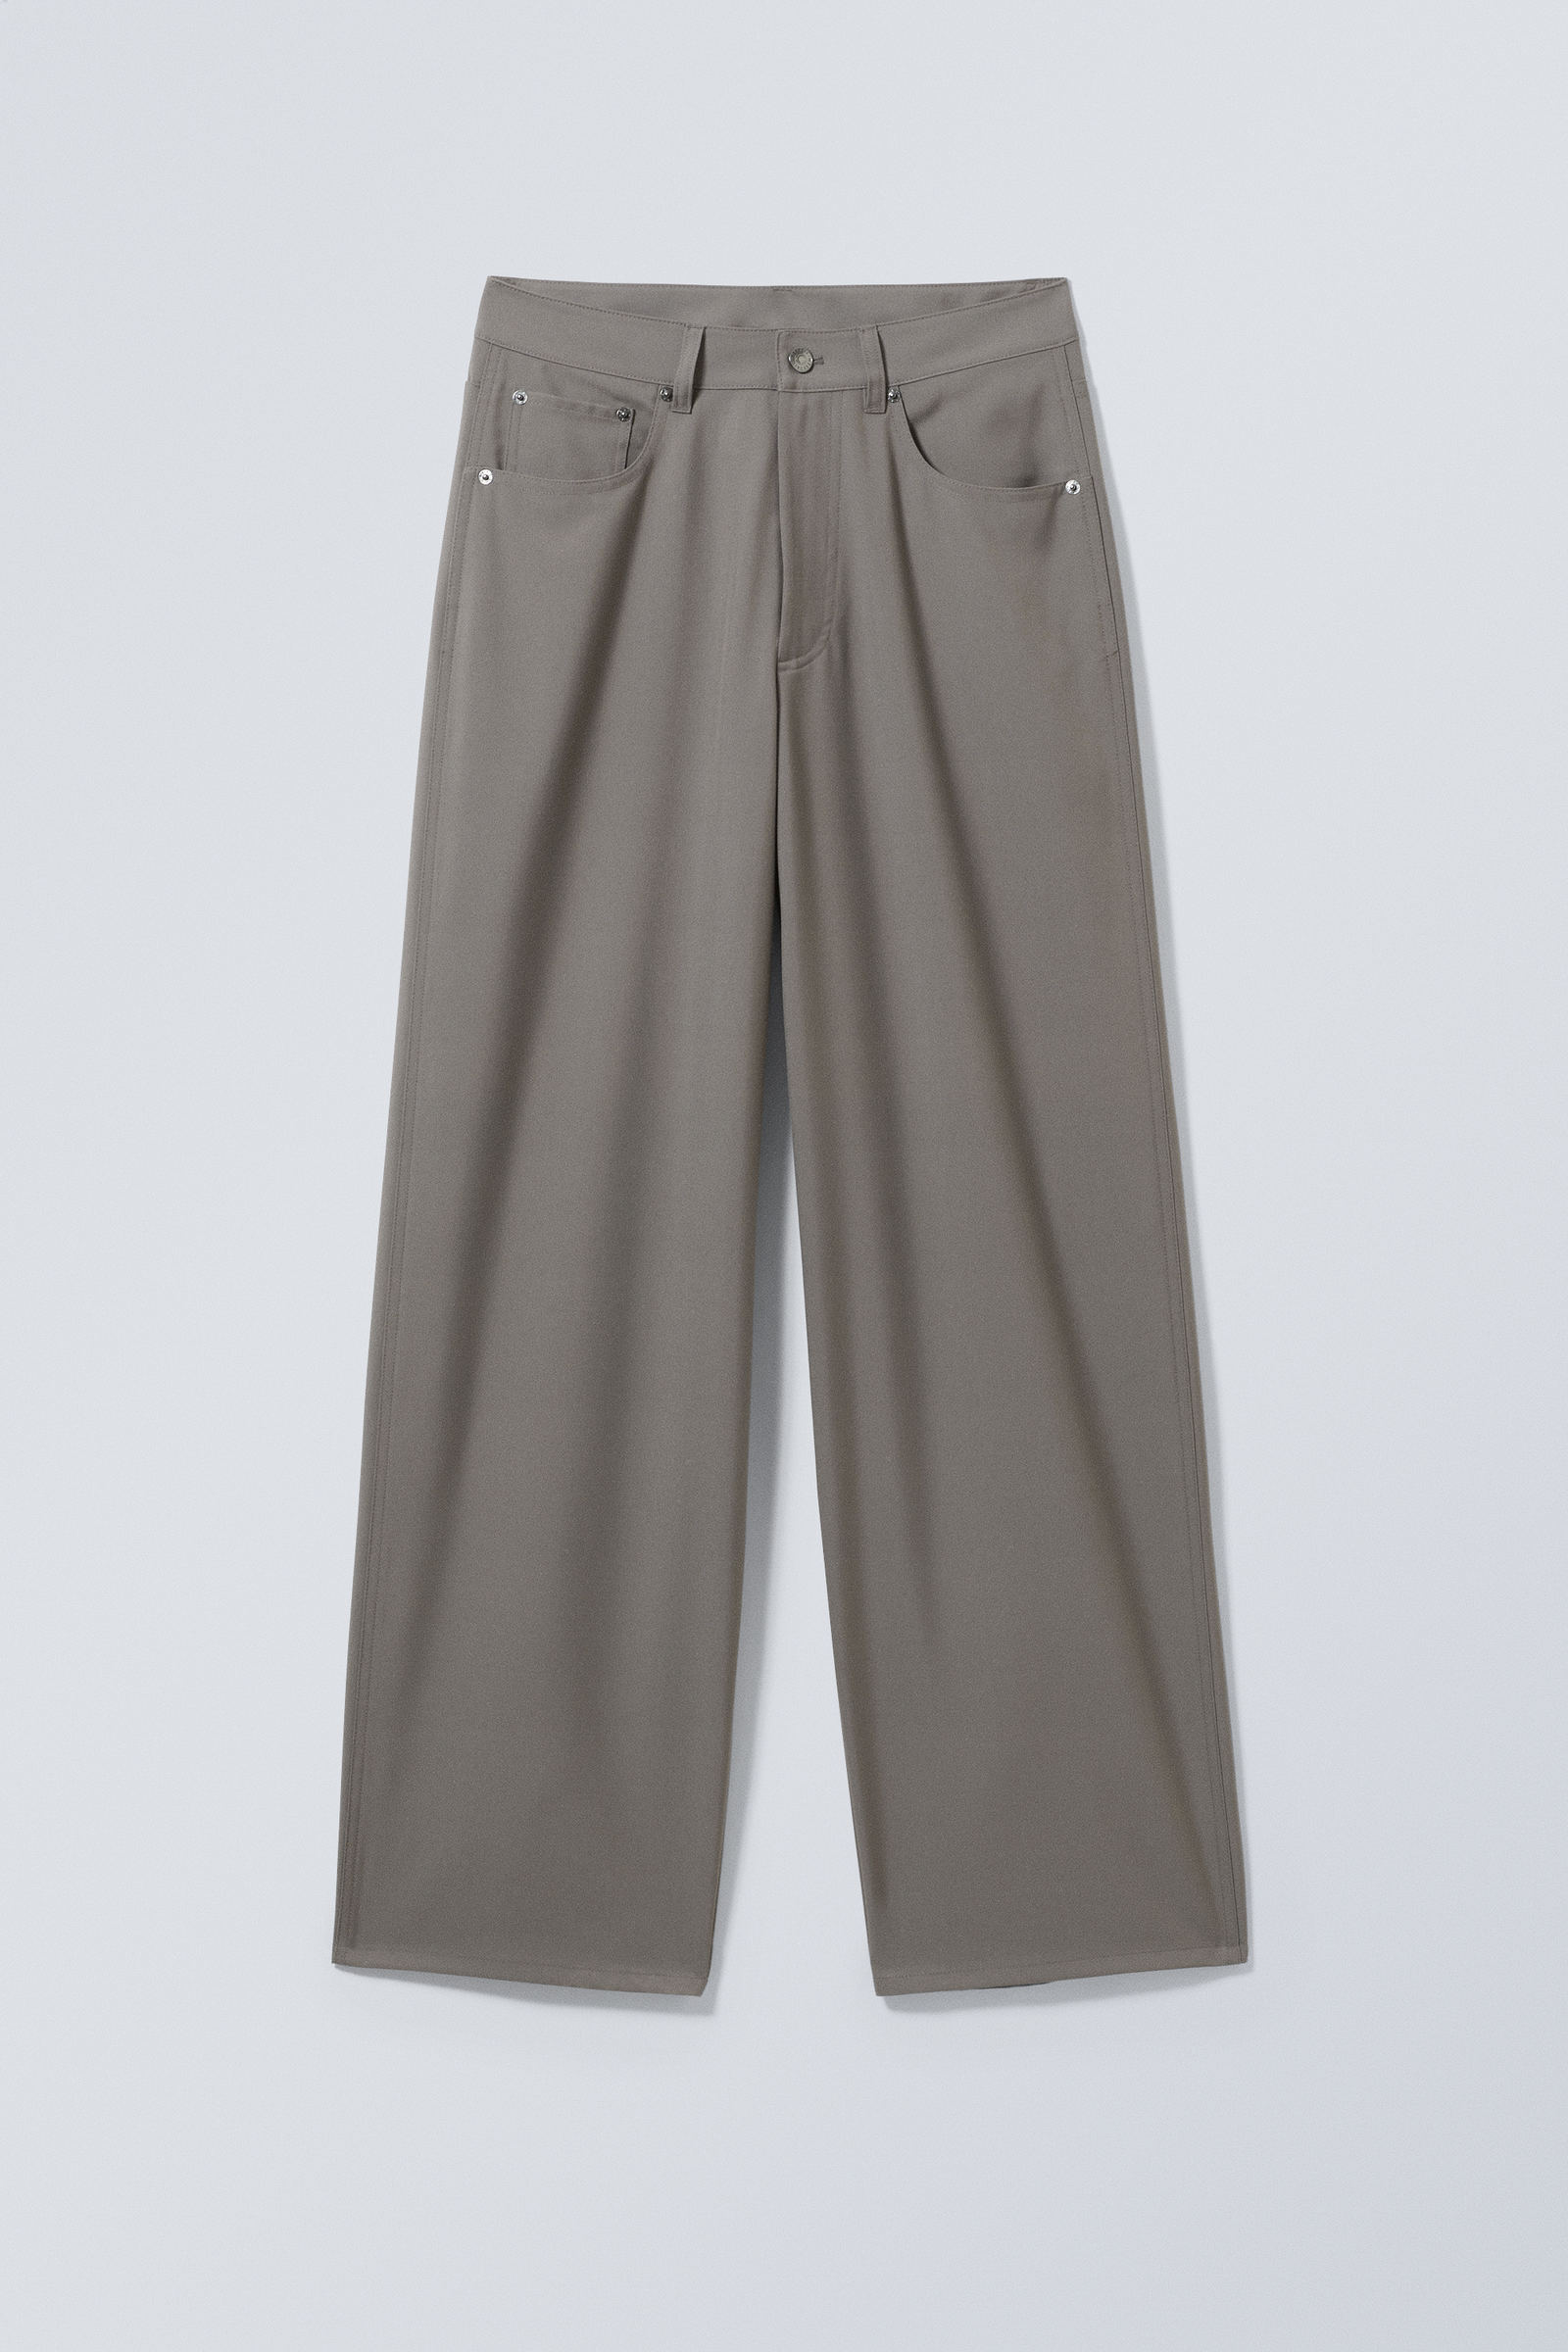 Dusty Grey - Juun Baggy Trousers - 0